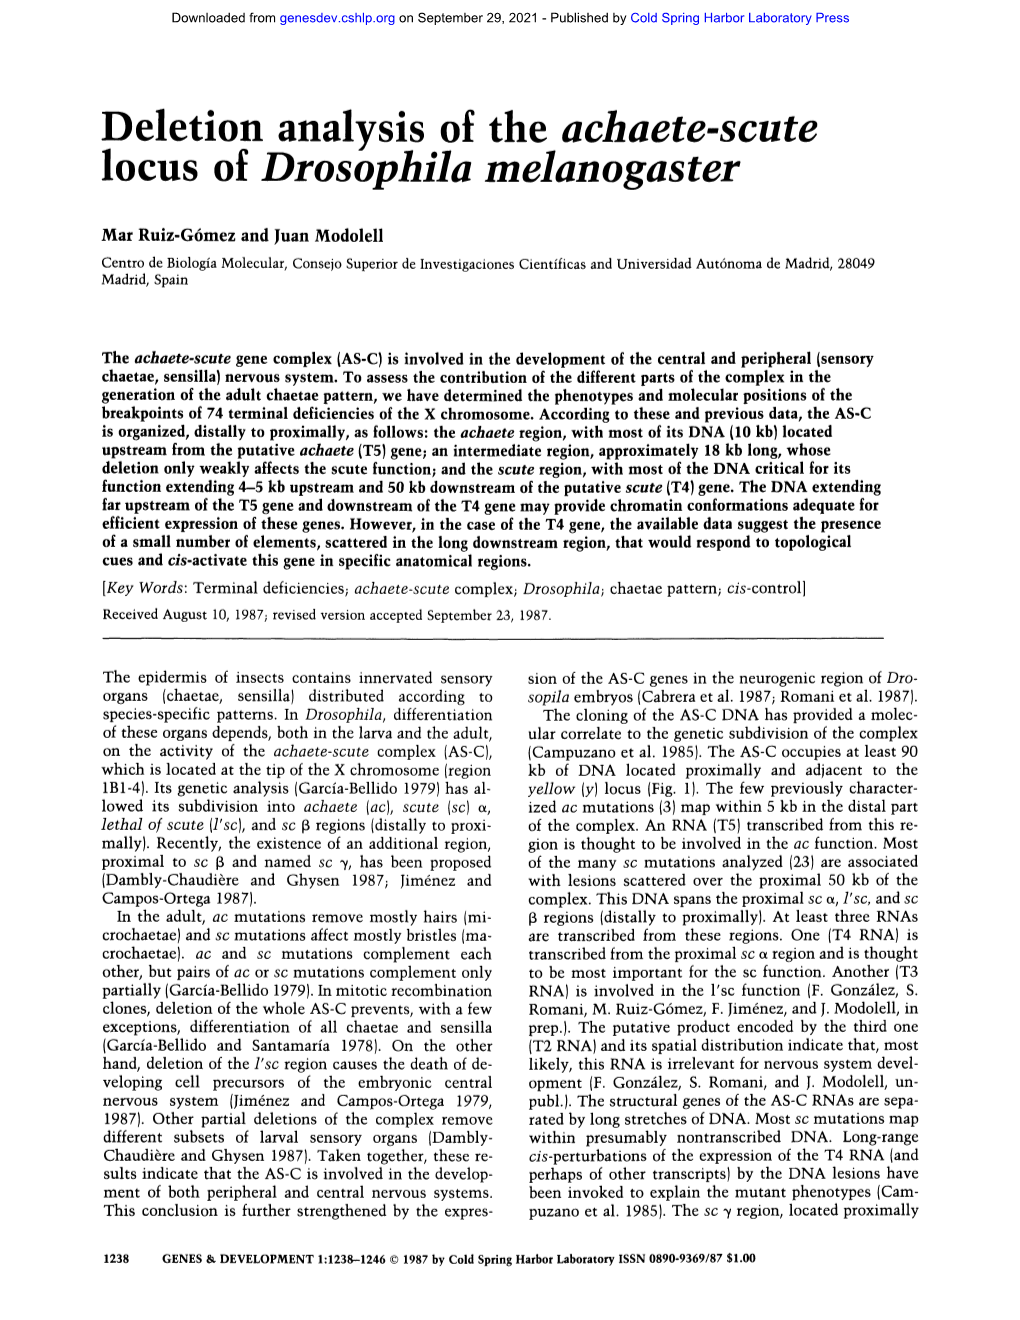 Locus of Drosophila Melanogaster